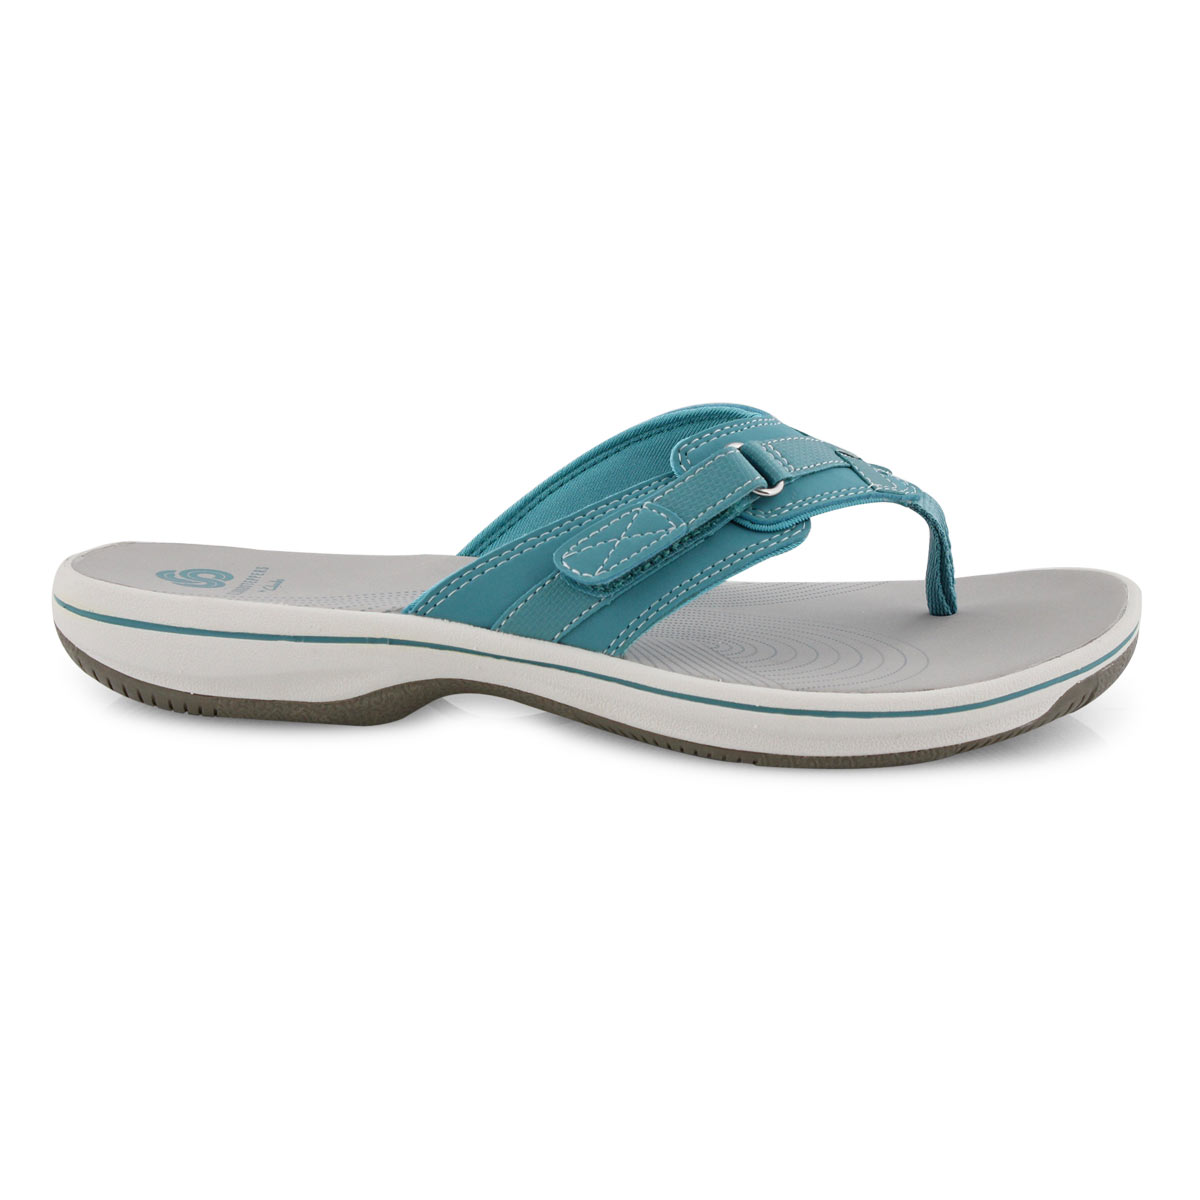 Clarks Women's BREEZE SEA aqua thong sandals | SoftMoc.com